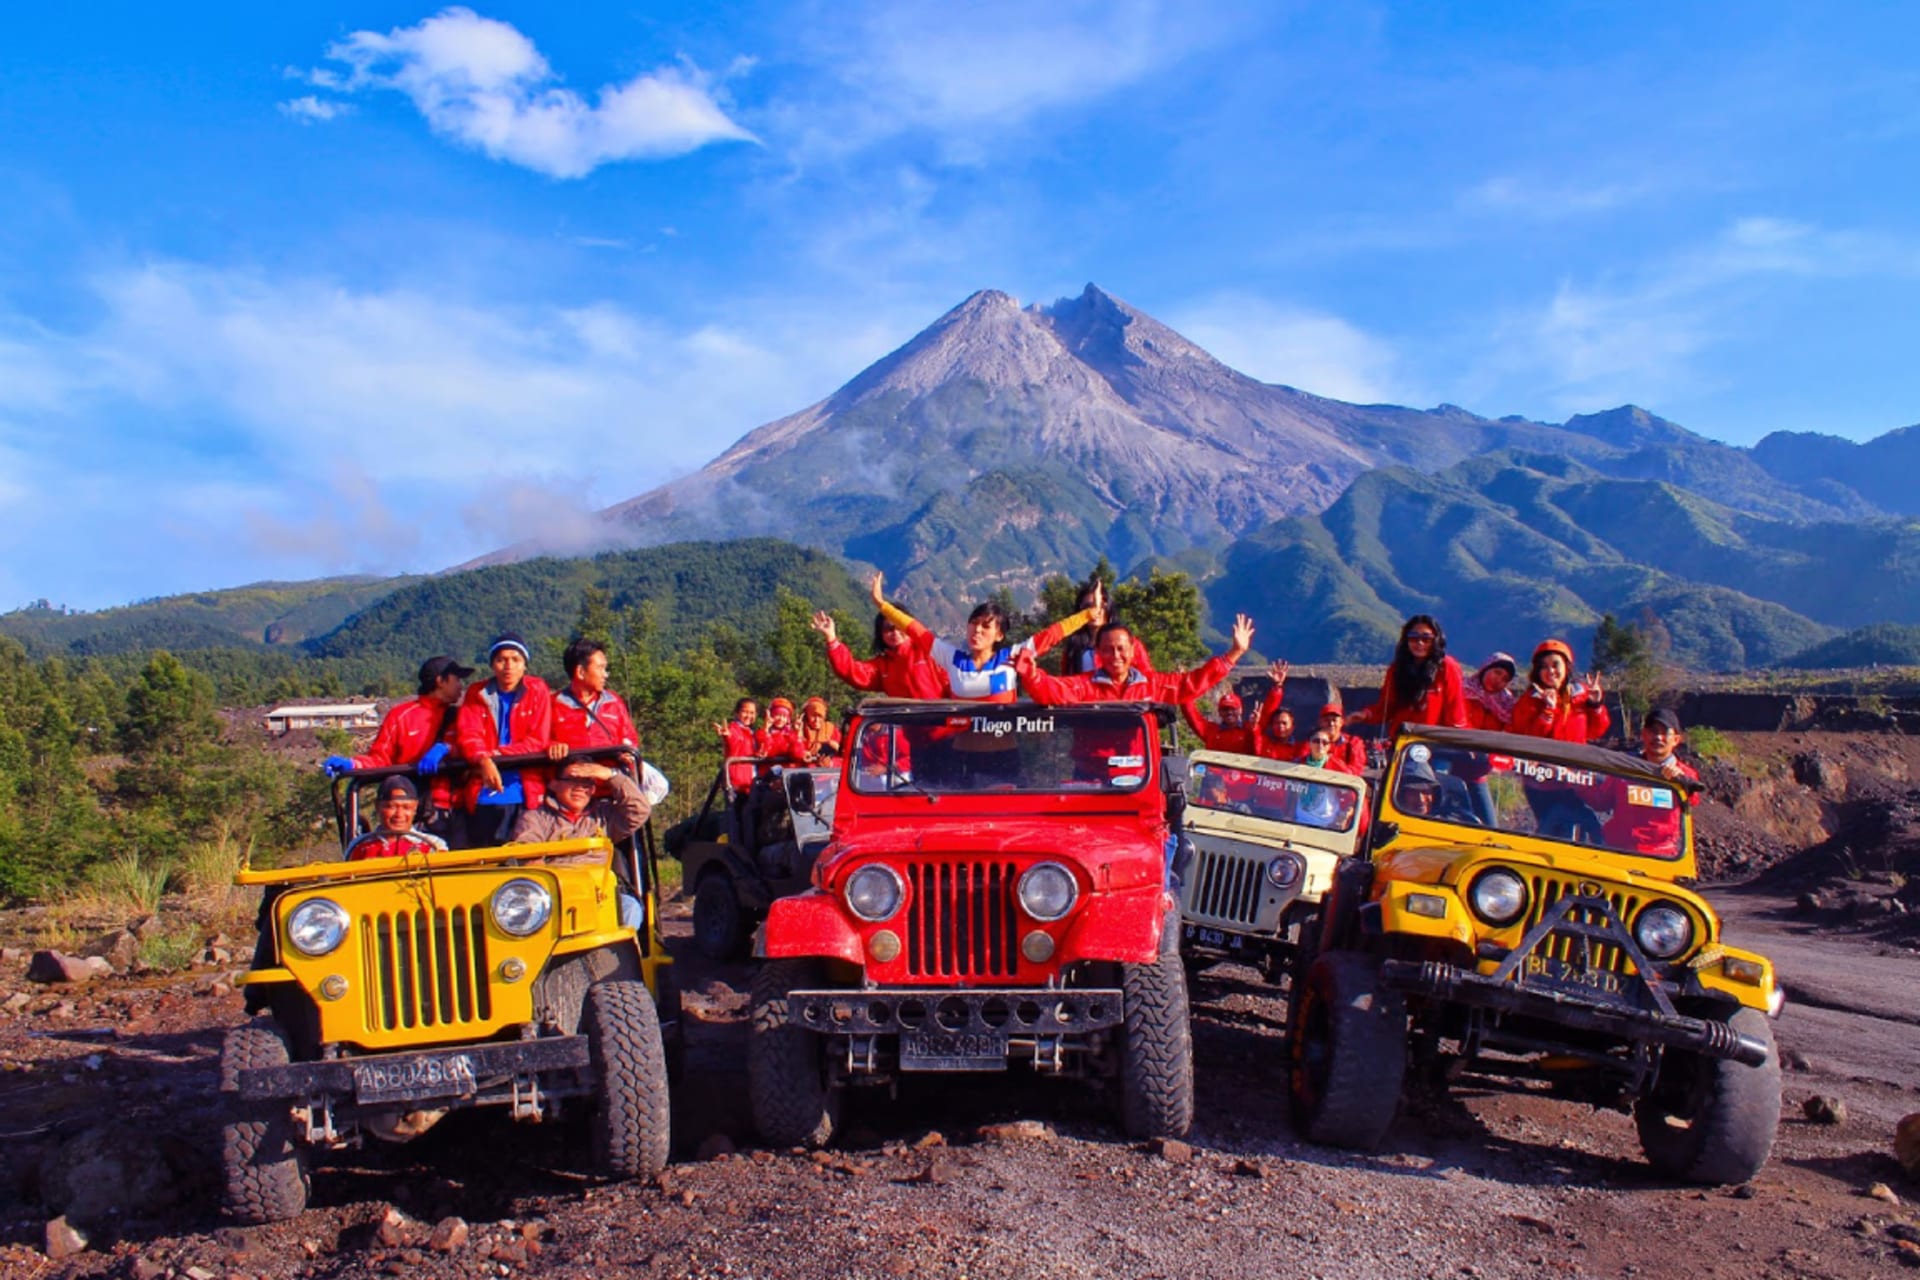 Beli Paket Tur 1 Day Merapi Jeep Promo Januari 2023 - tiket.com